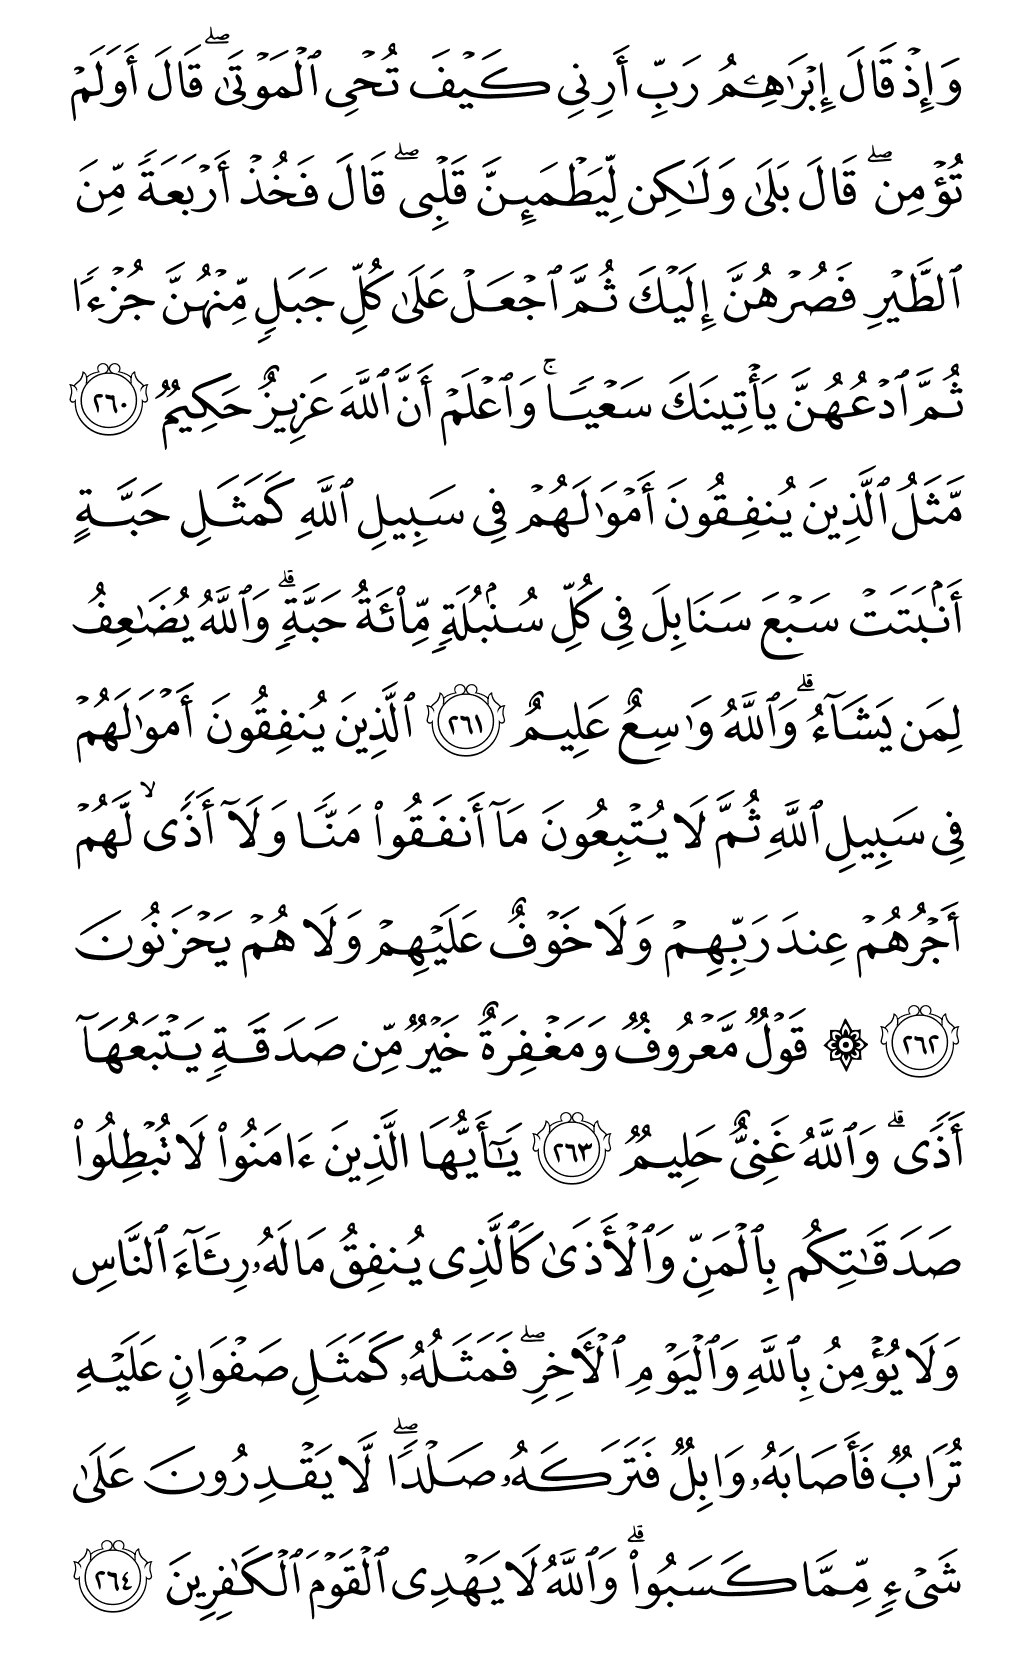 الصفحة رقم 44 من القرآن الكريم